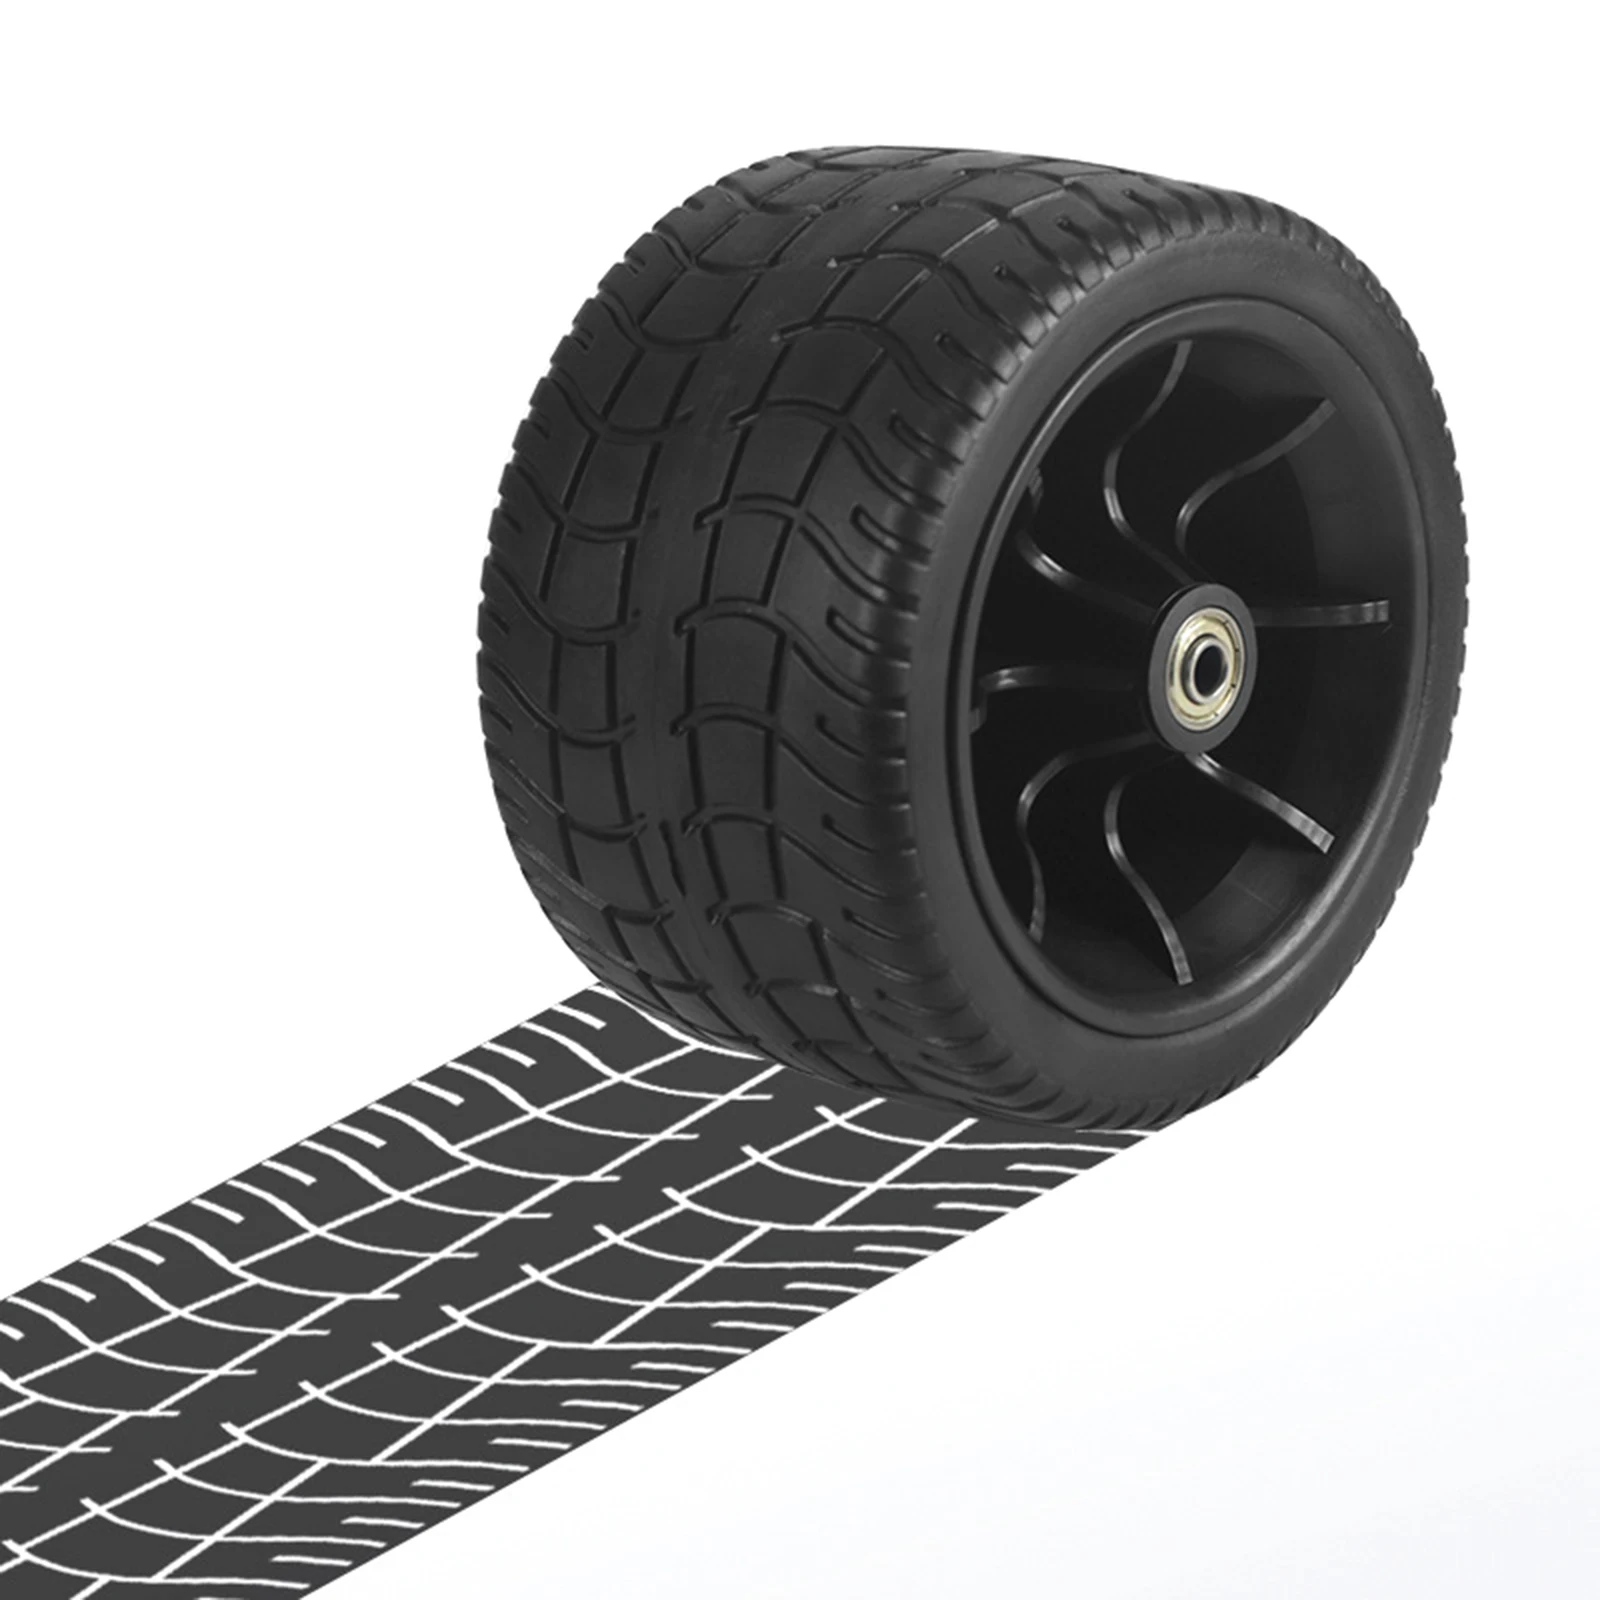 

Сменное колесо с двойным подшипником, черный узор для кемпинга на открытом воздухе, 1/2/3 песок или трава, спортивные товары, вес 280 г/10 унций